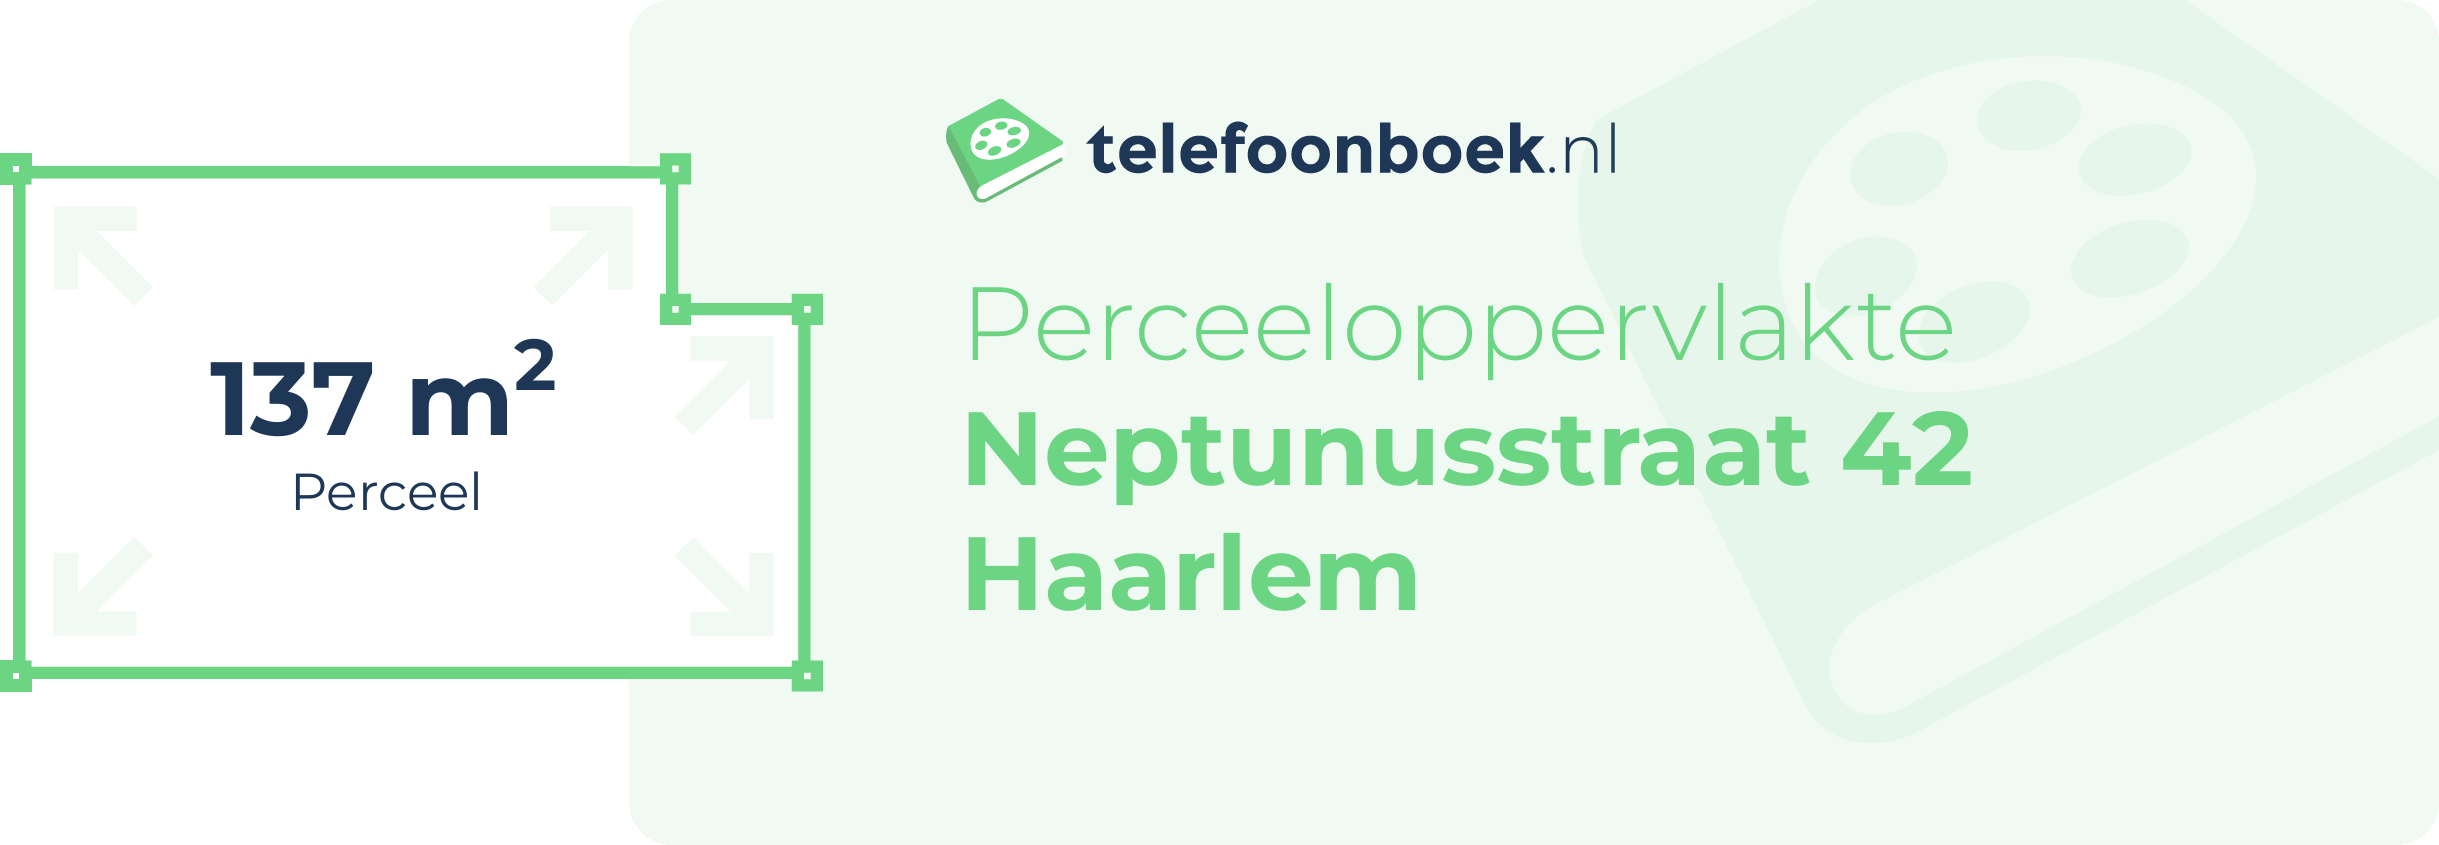 Perceeloppervlakte Neptunusstraat 42 Haarlem